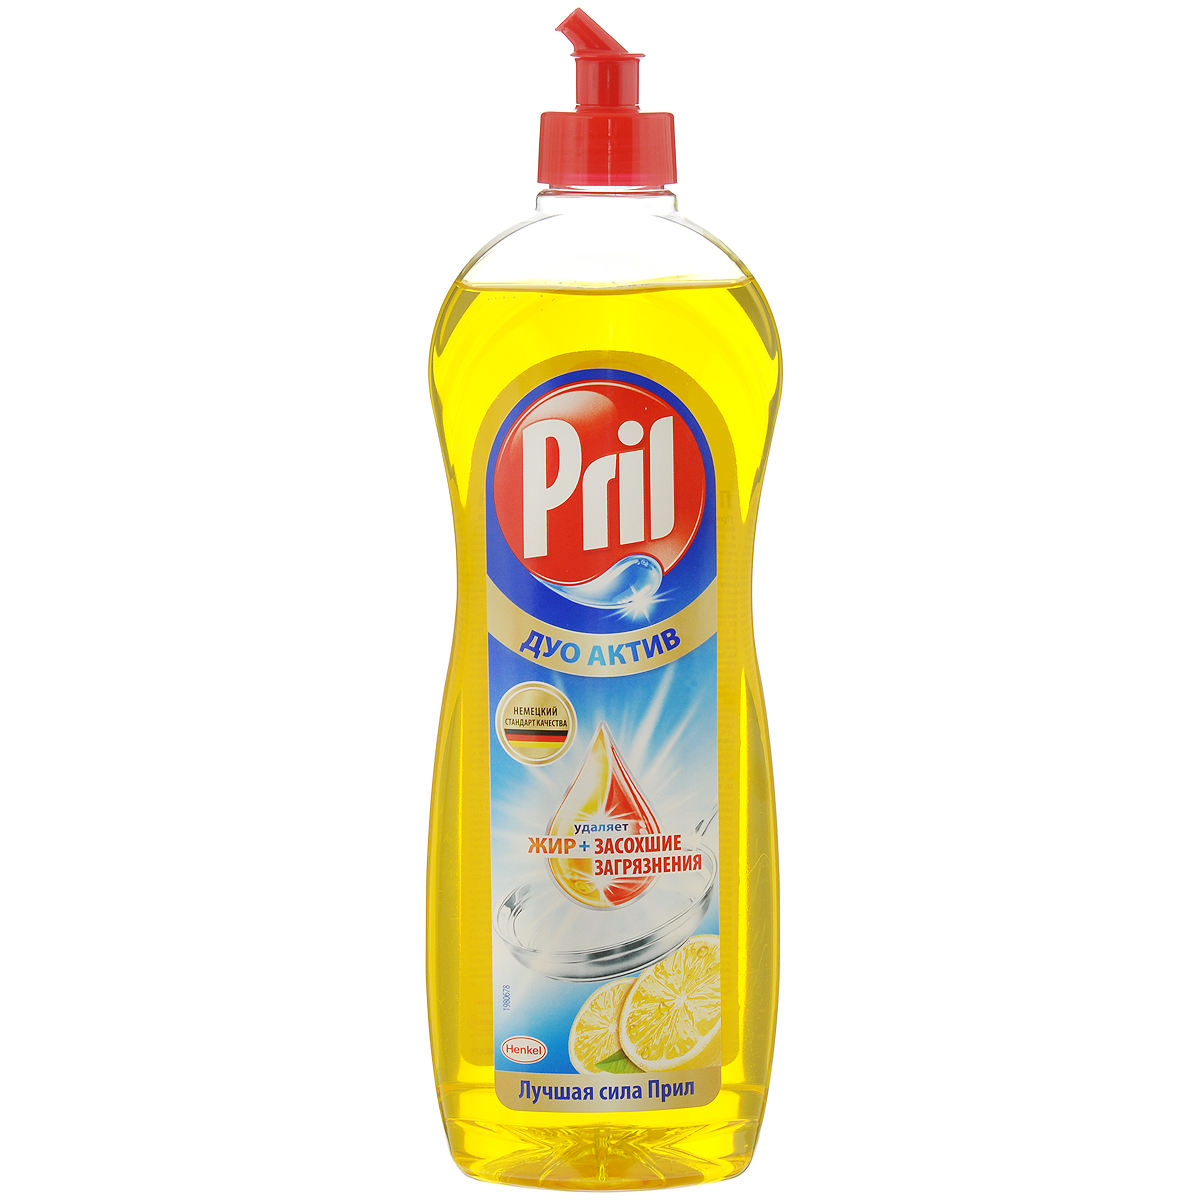 Средство для мытья посуды Pril "Дуо актив", с ароматом лимона, 900 мл